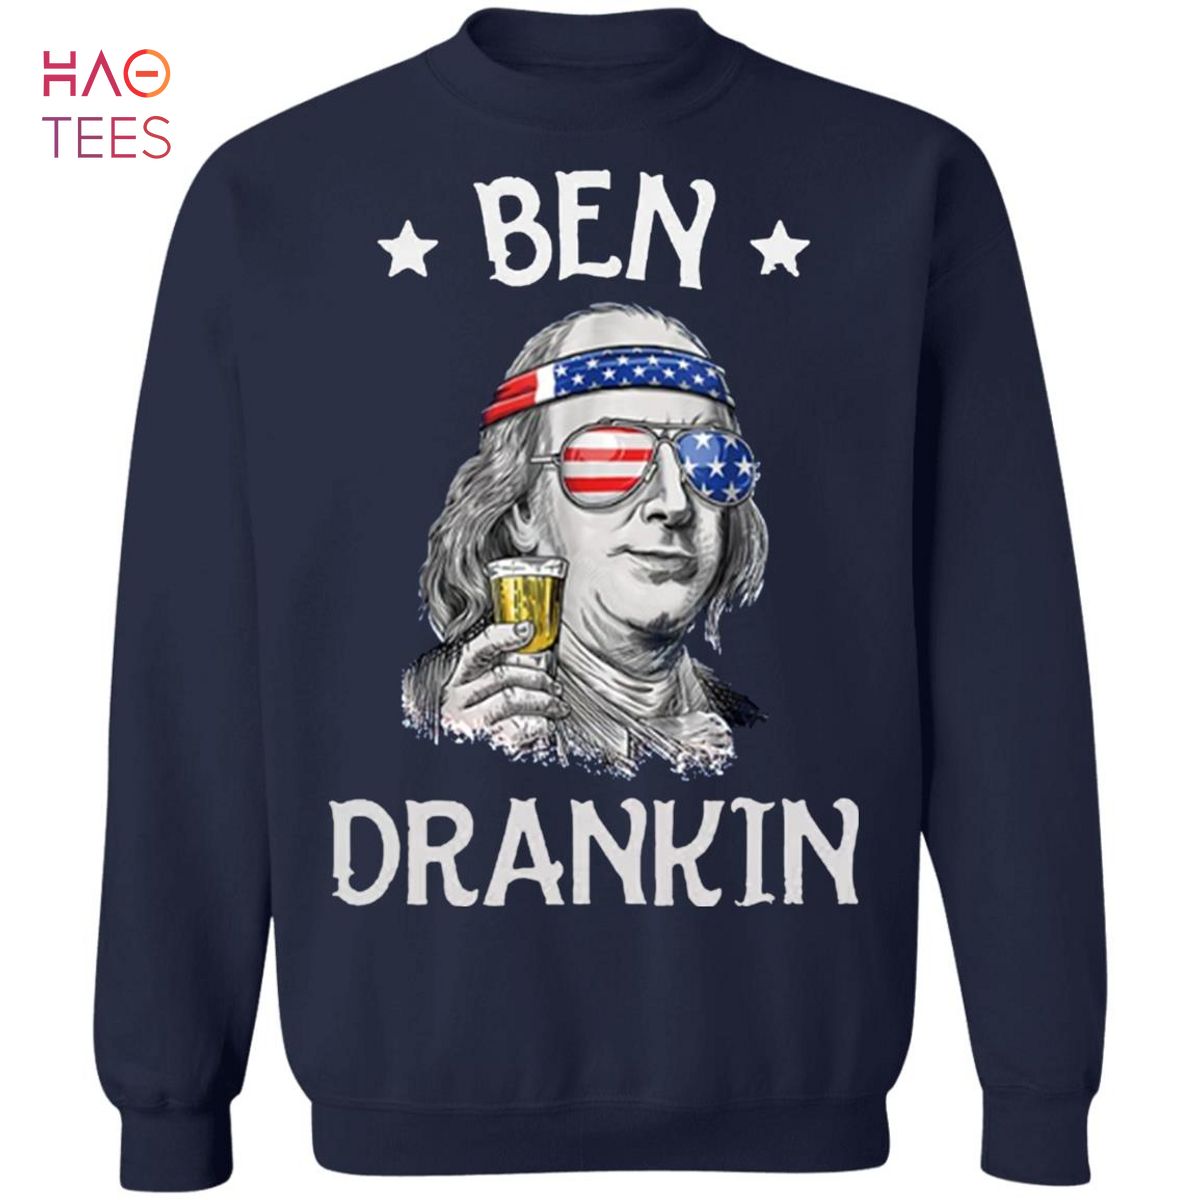 BEST Ben Drankin Sweater